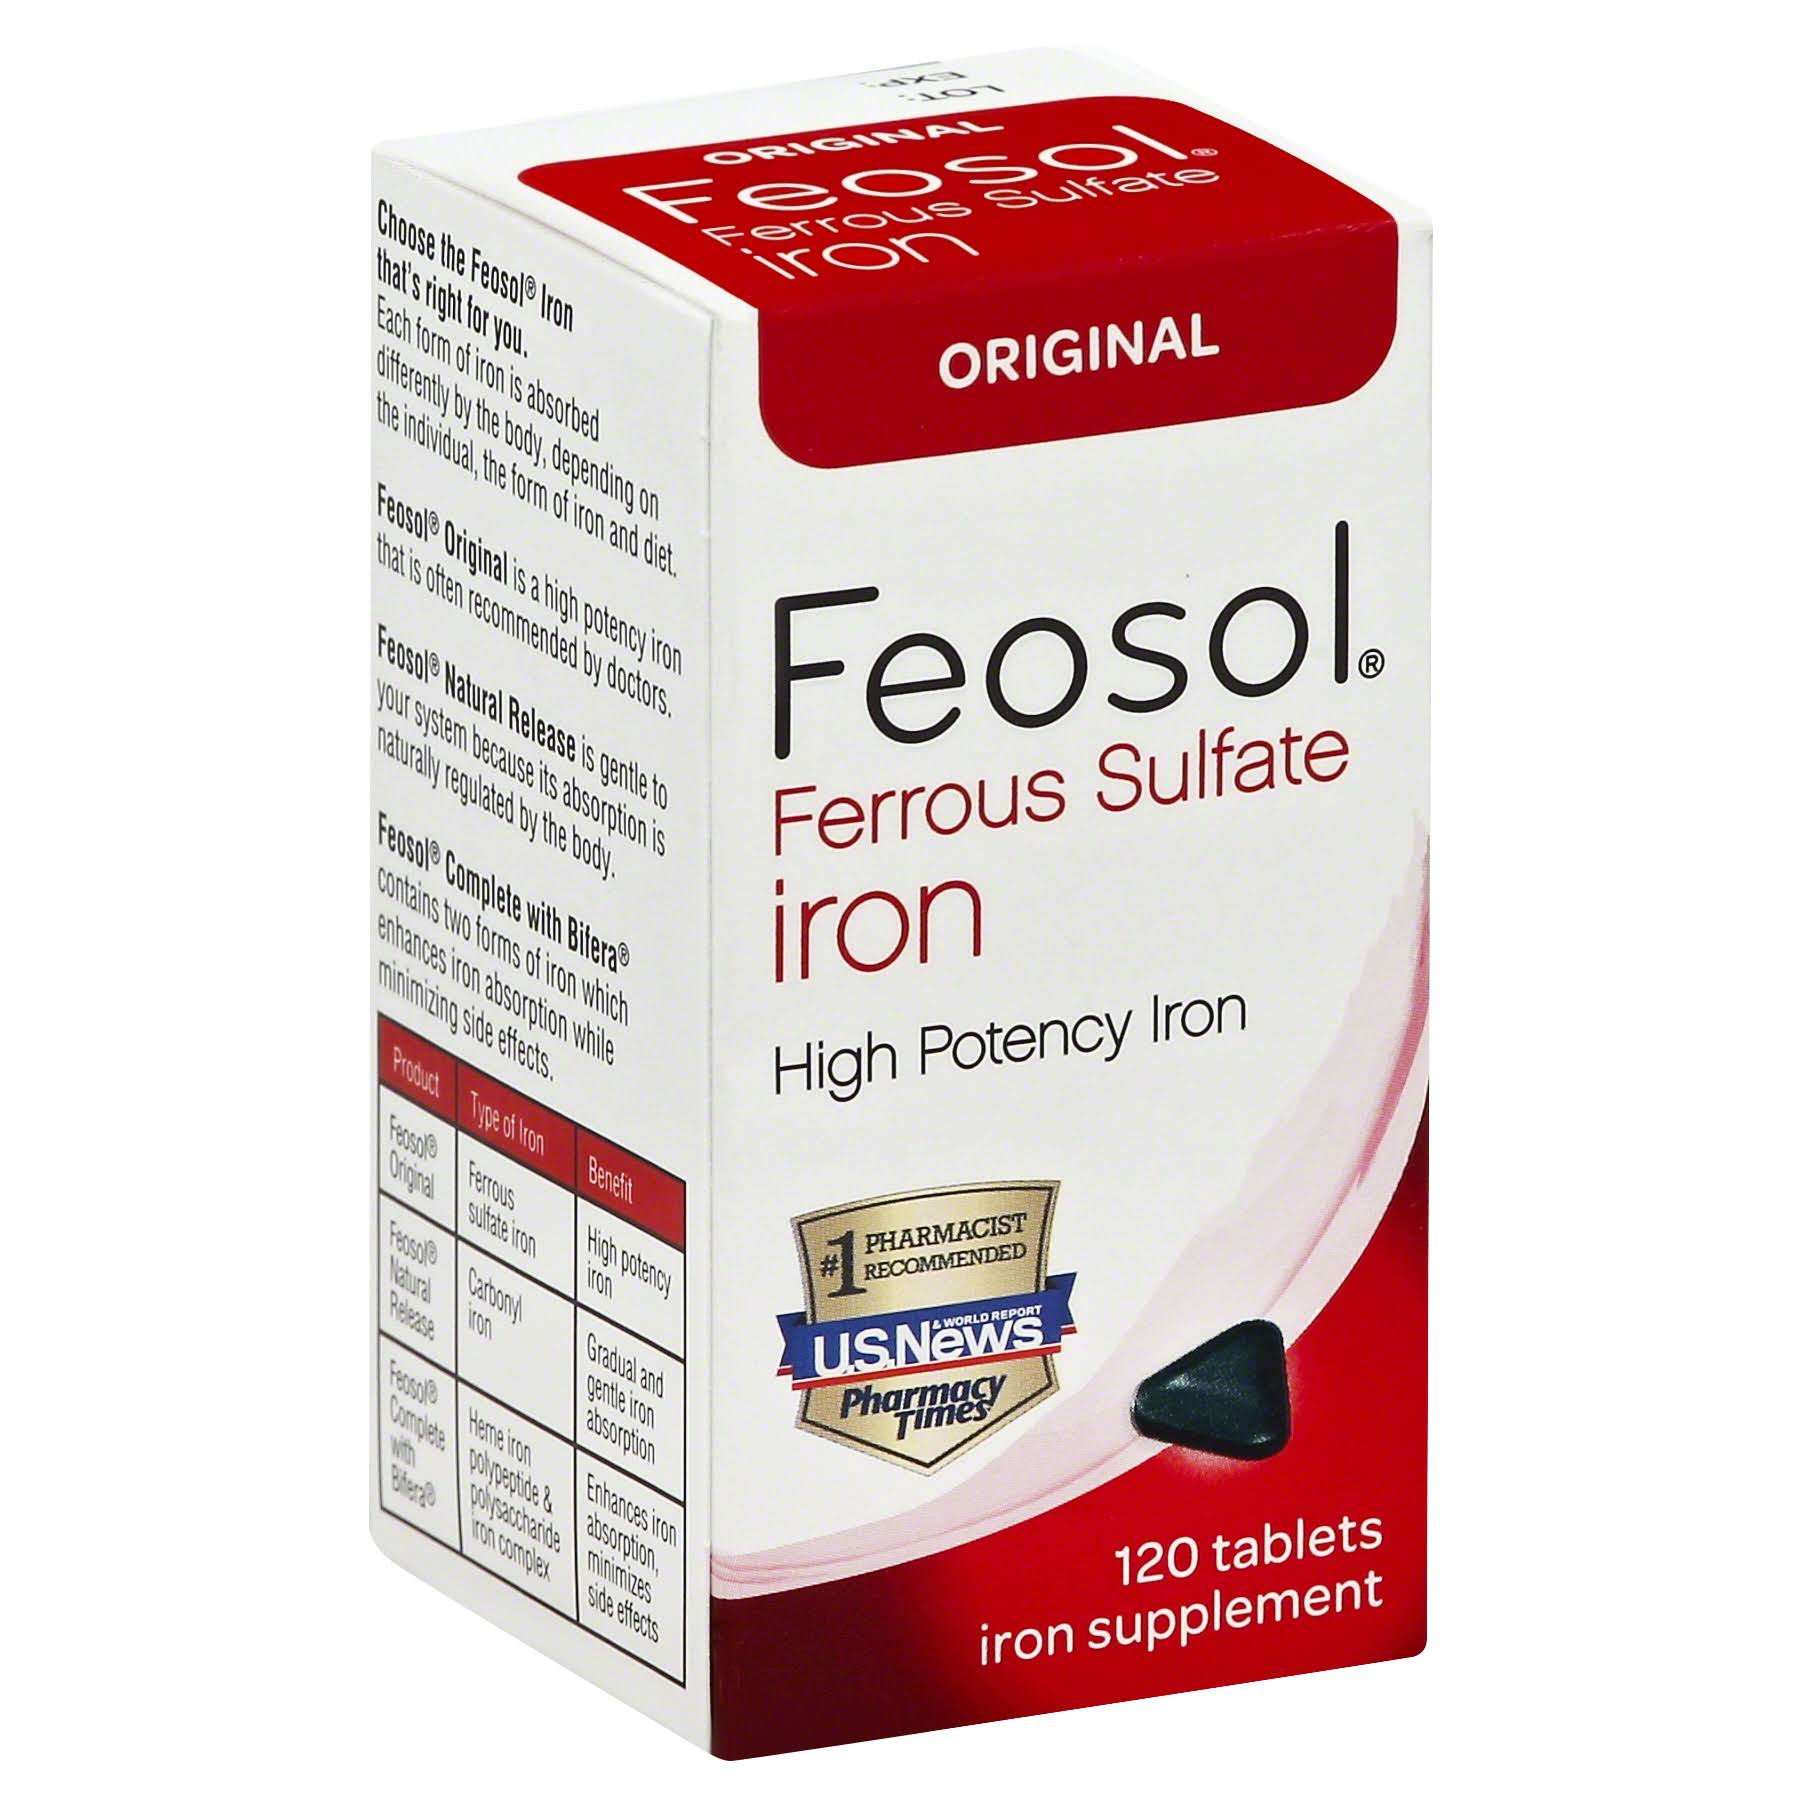 Feosol Original Ferrous Sulfate Iron Supplement